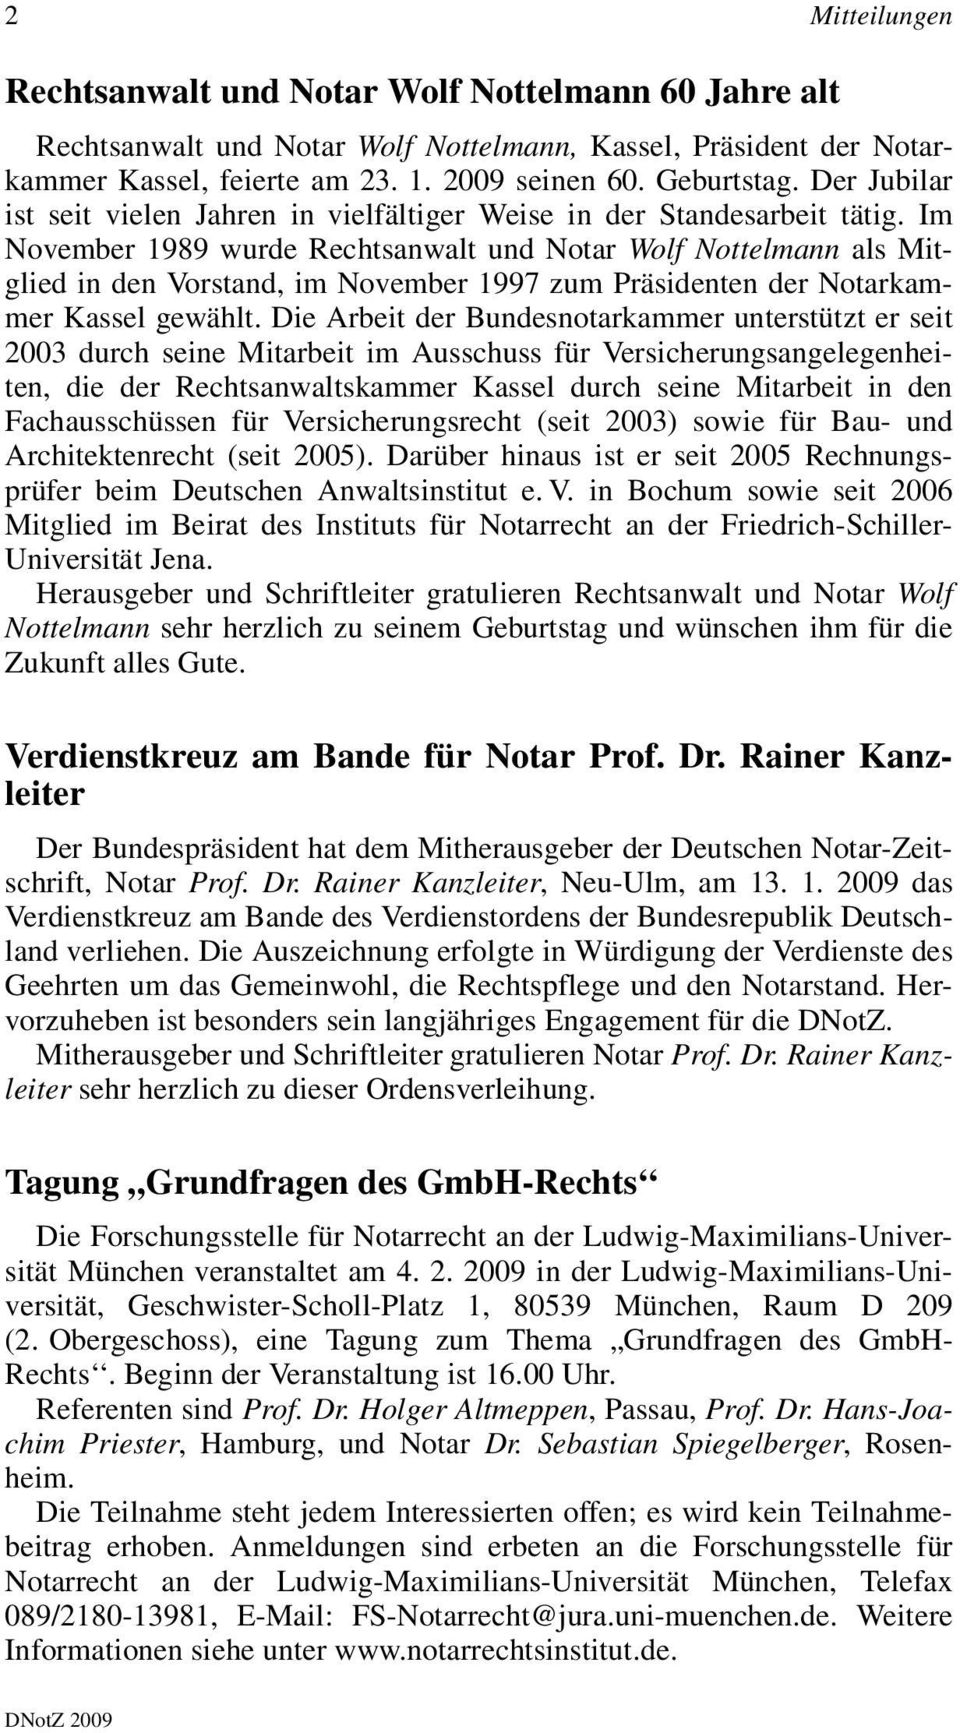 Im November 1989 wurde Rechtsanwalt und Notar Wolf Nottelmann als Mitglied in den Vorstand, im November 1997 zum Präsidenten der Notarkammer Kassel gewählt.